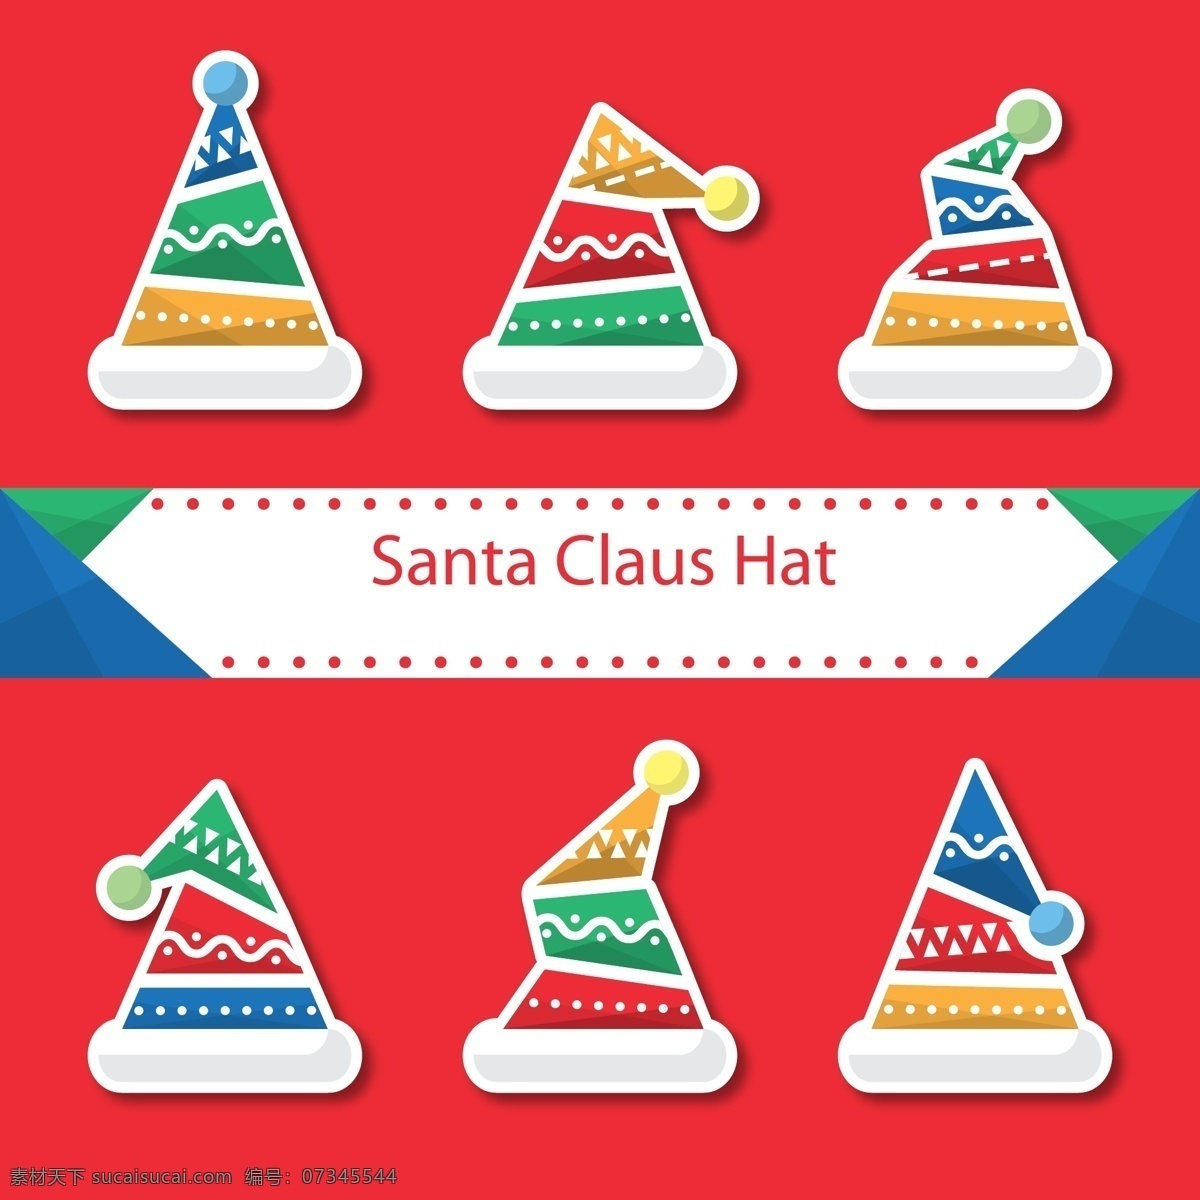 彩色 圣诞 帽 设计素材 创意 圣诞节 卡通 矢量素材 圣诞帽 ai素材